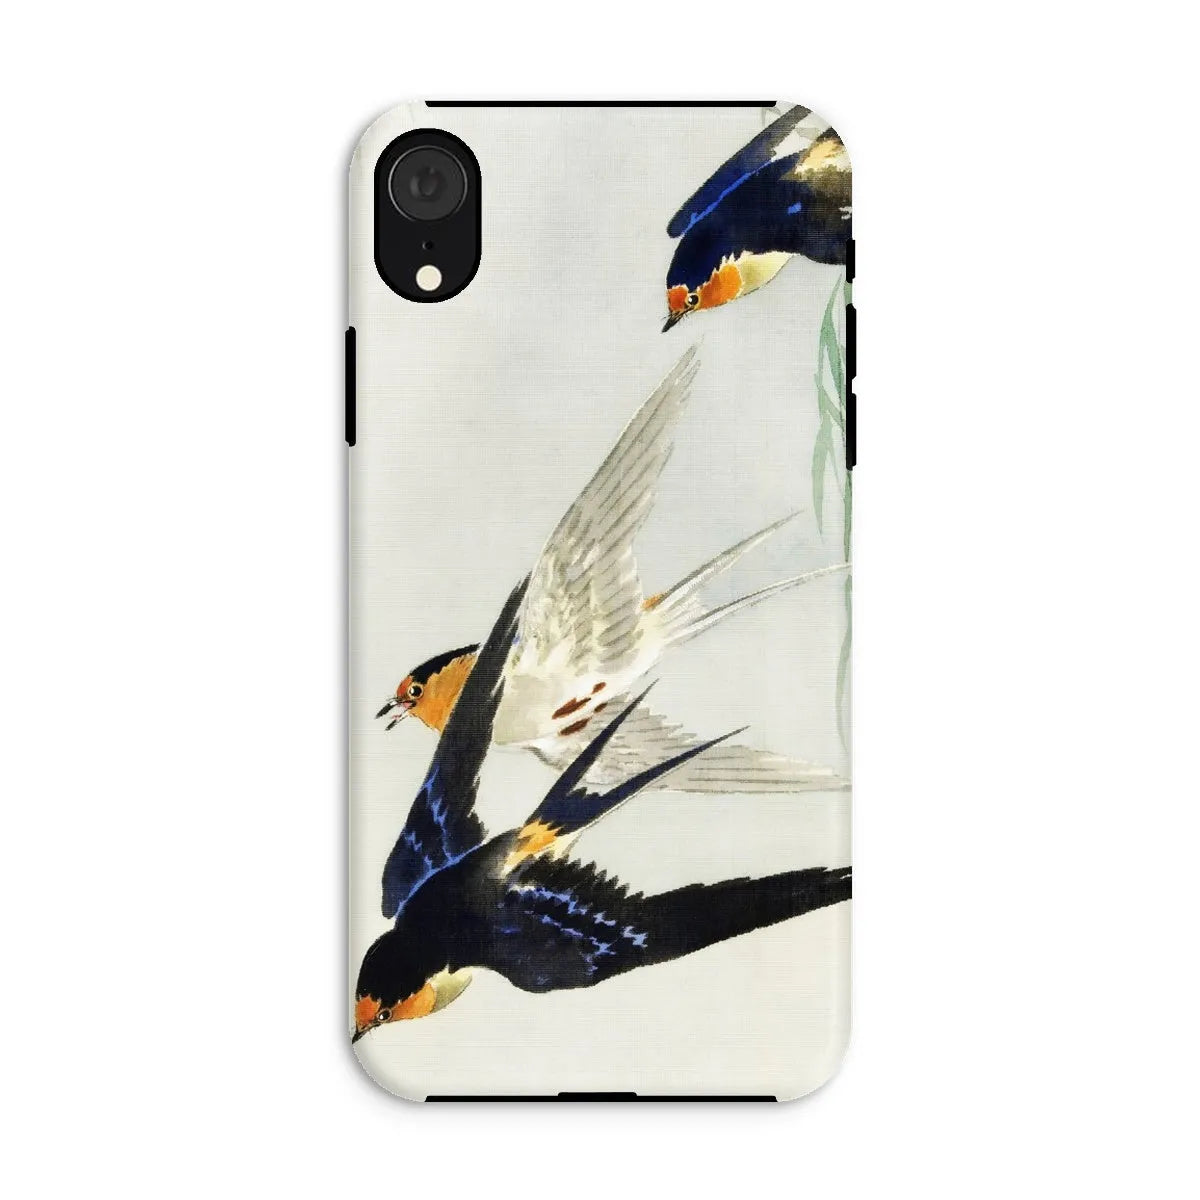 3 Birds In Flight - Kachō-e Art Phone Case - Ohara Koson - Iphone Xr / Matte - Mobile Phone Cases - Aesthetic Art